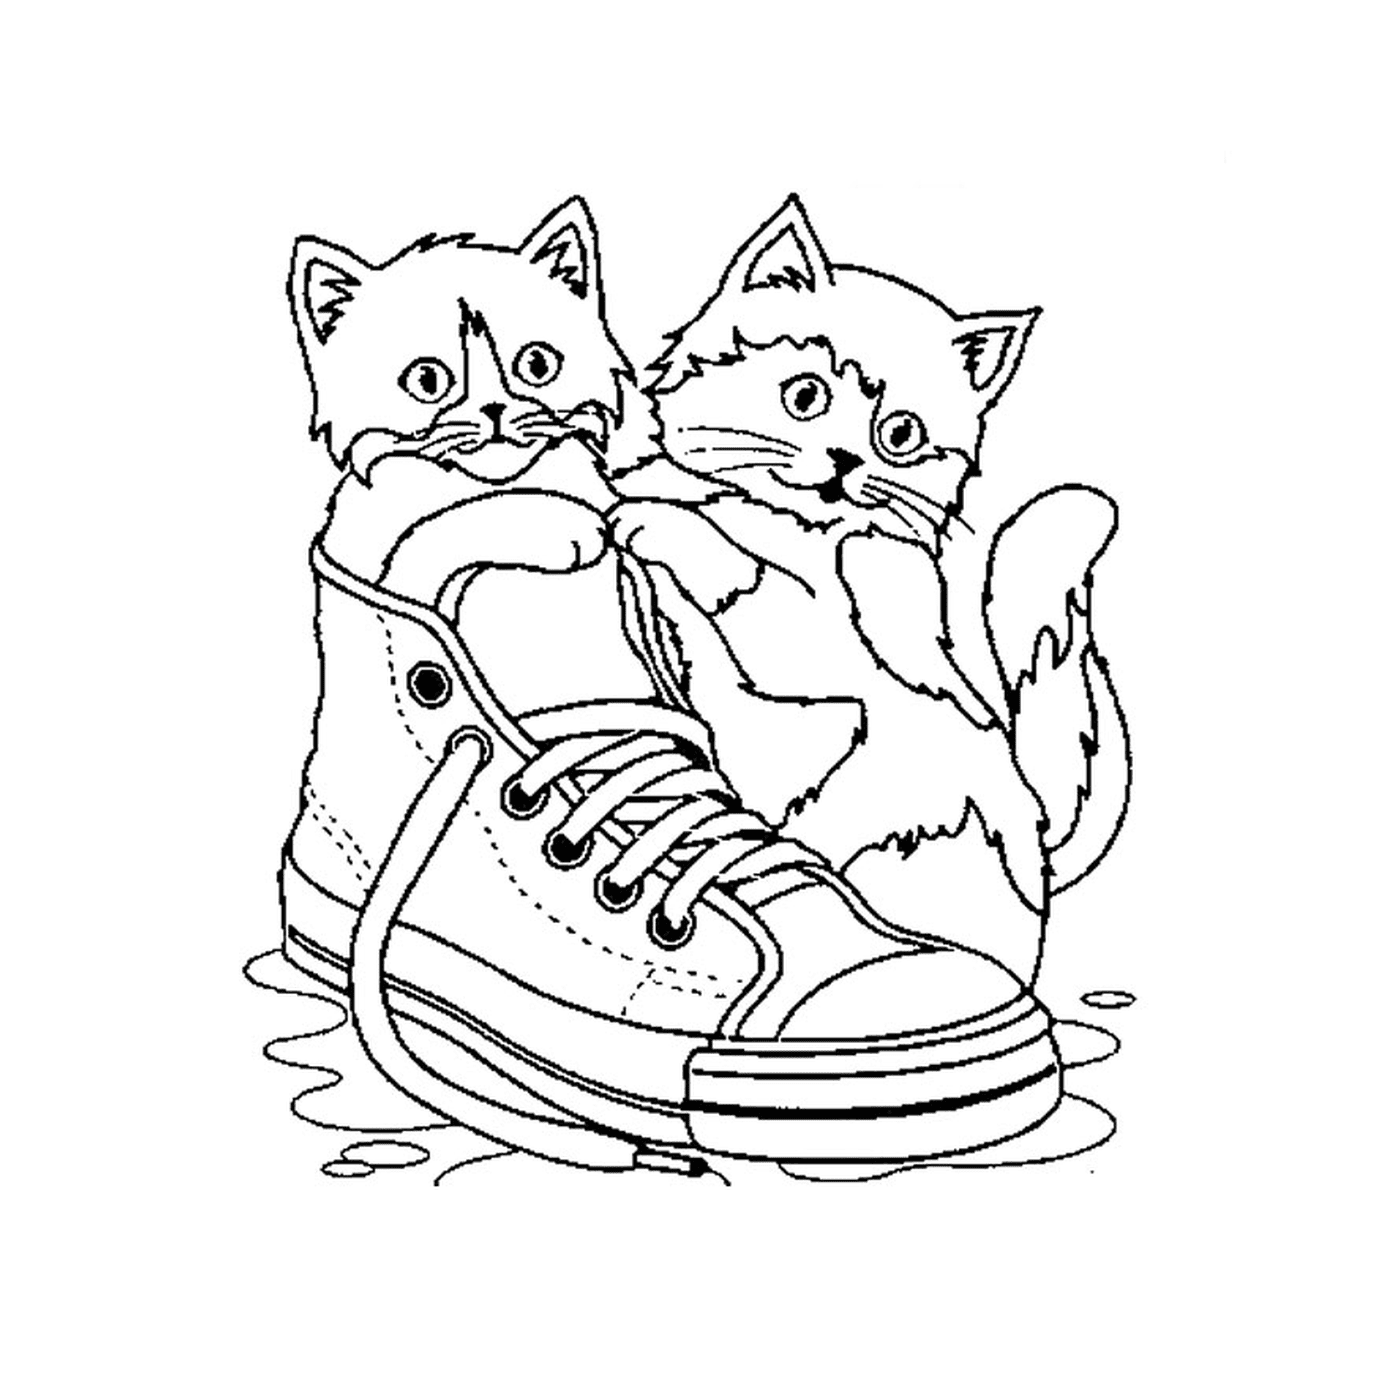  Dois gatos sentados em um sapato na água 